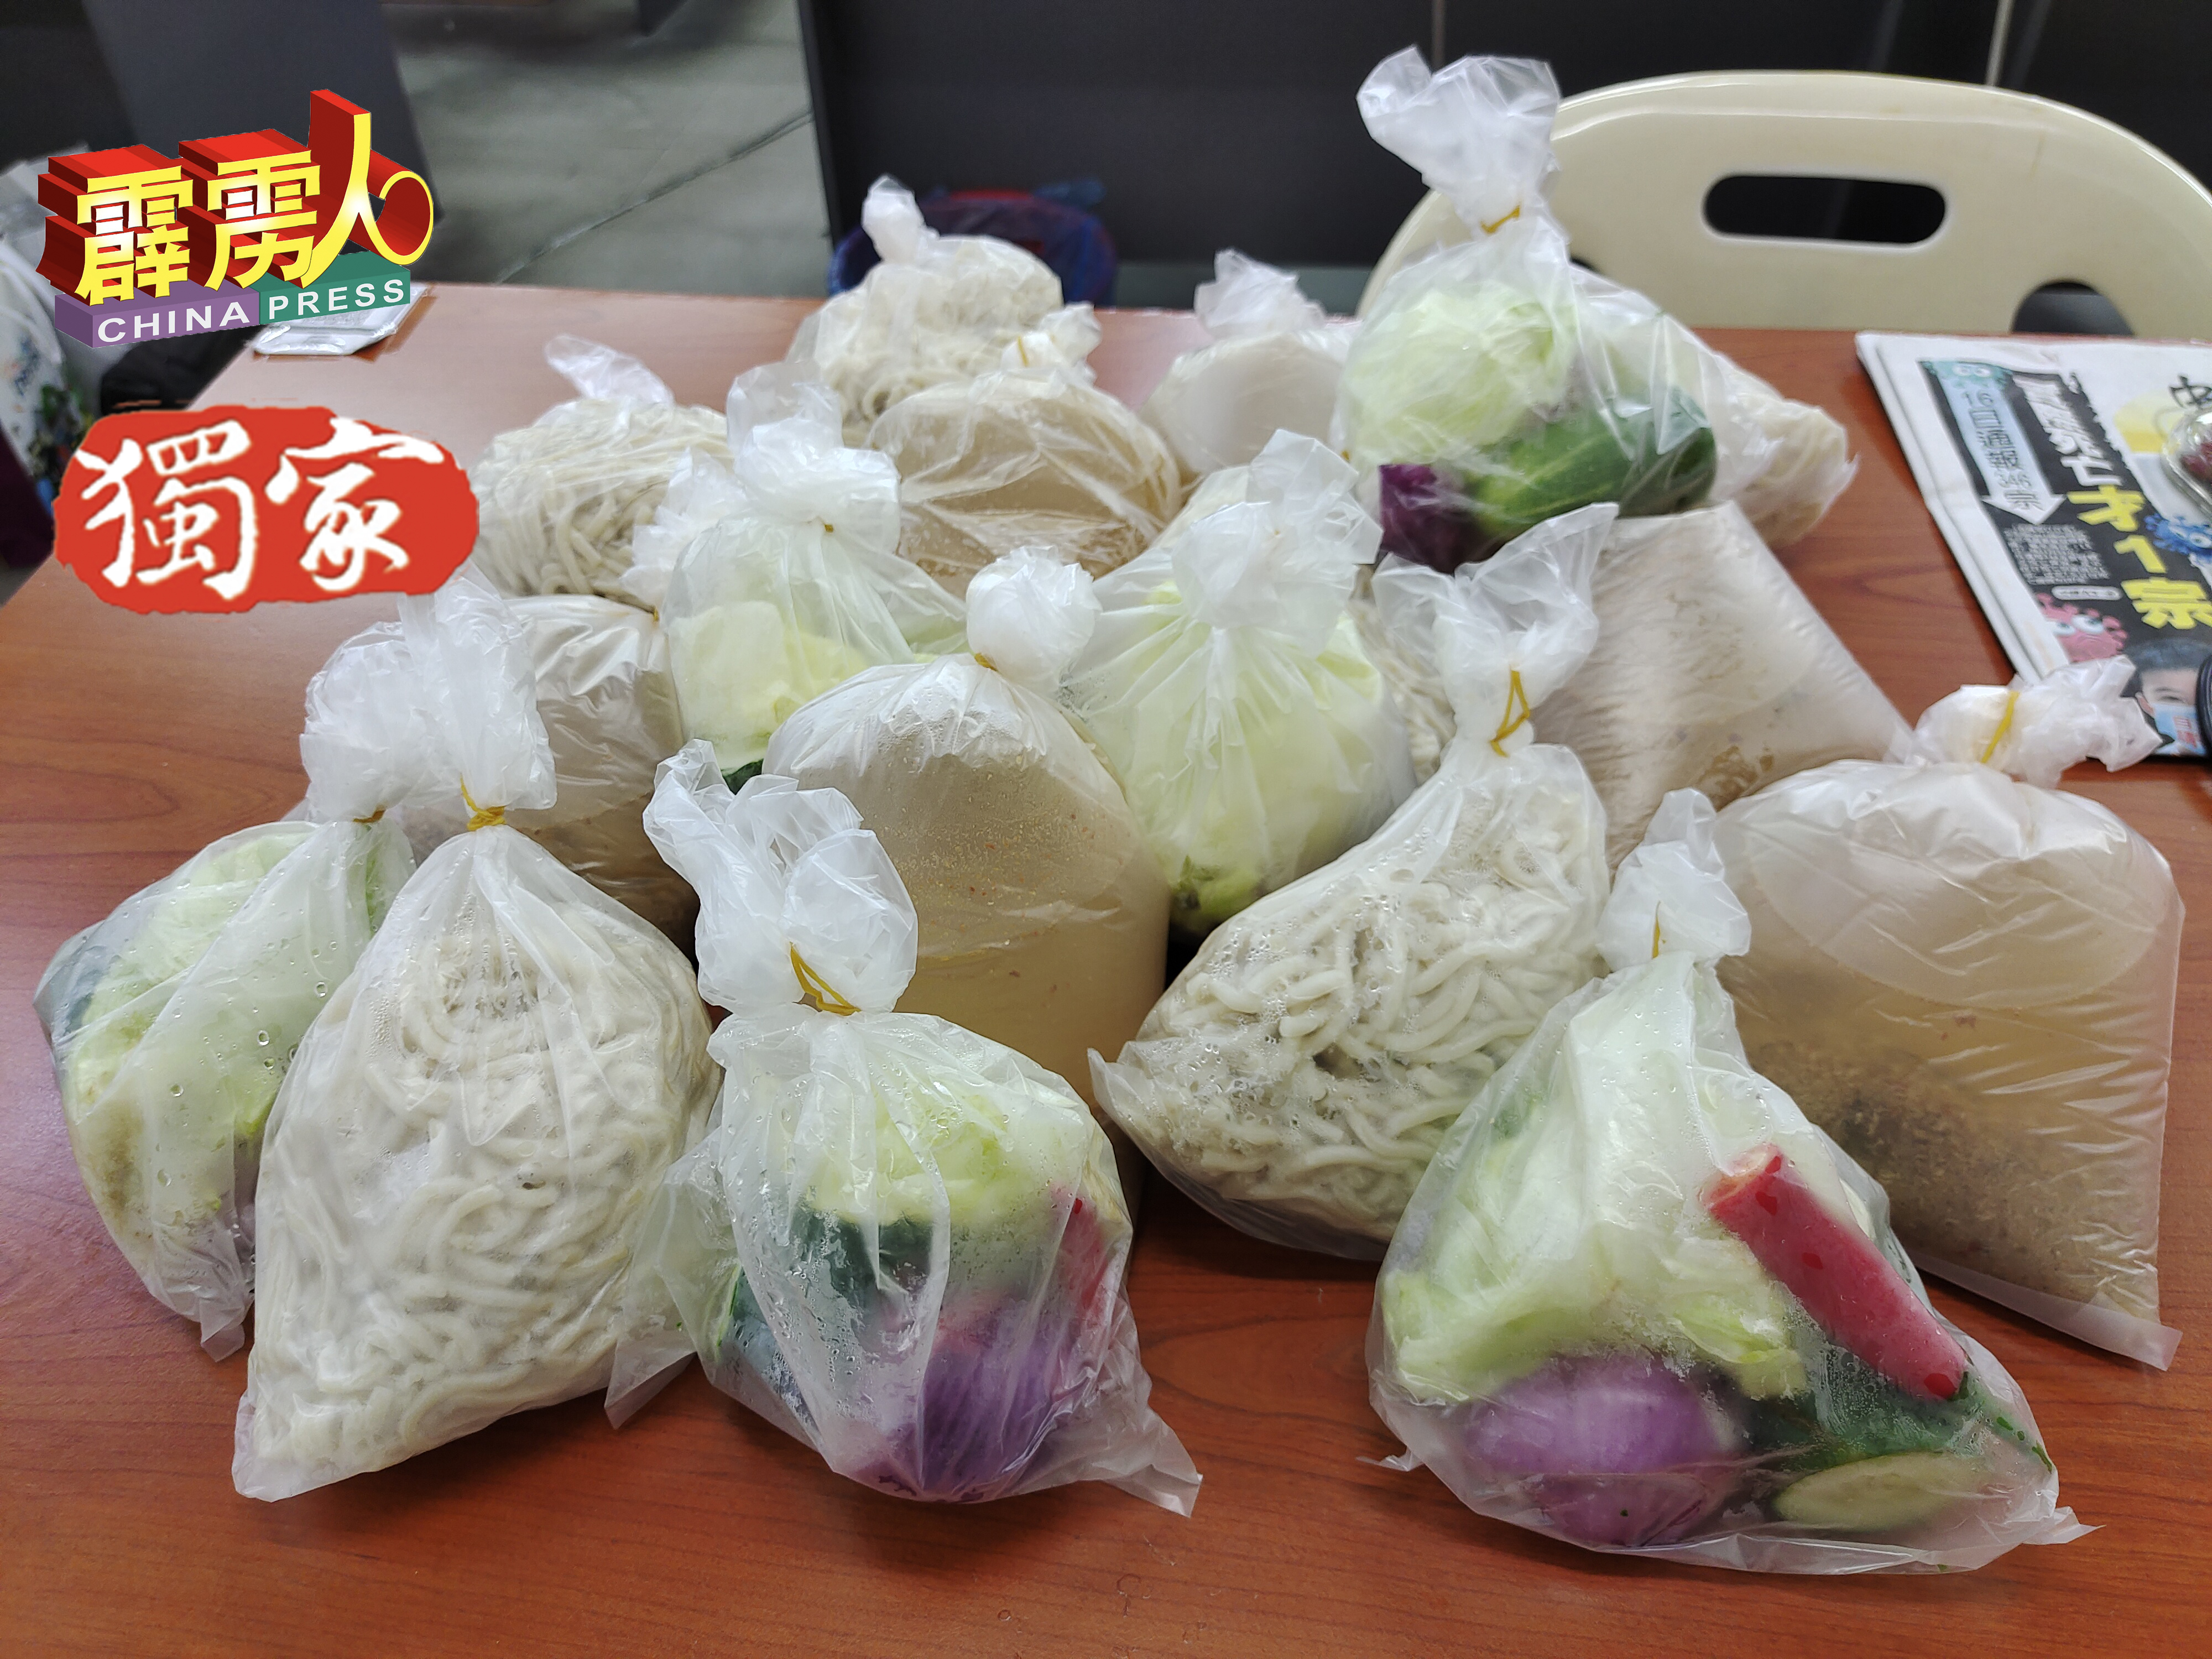 光顾江沙叻沙的食客，打包并非以一包两包计算，而是以麵条公斤计算，即1公斤或更多公斤打包带走。